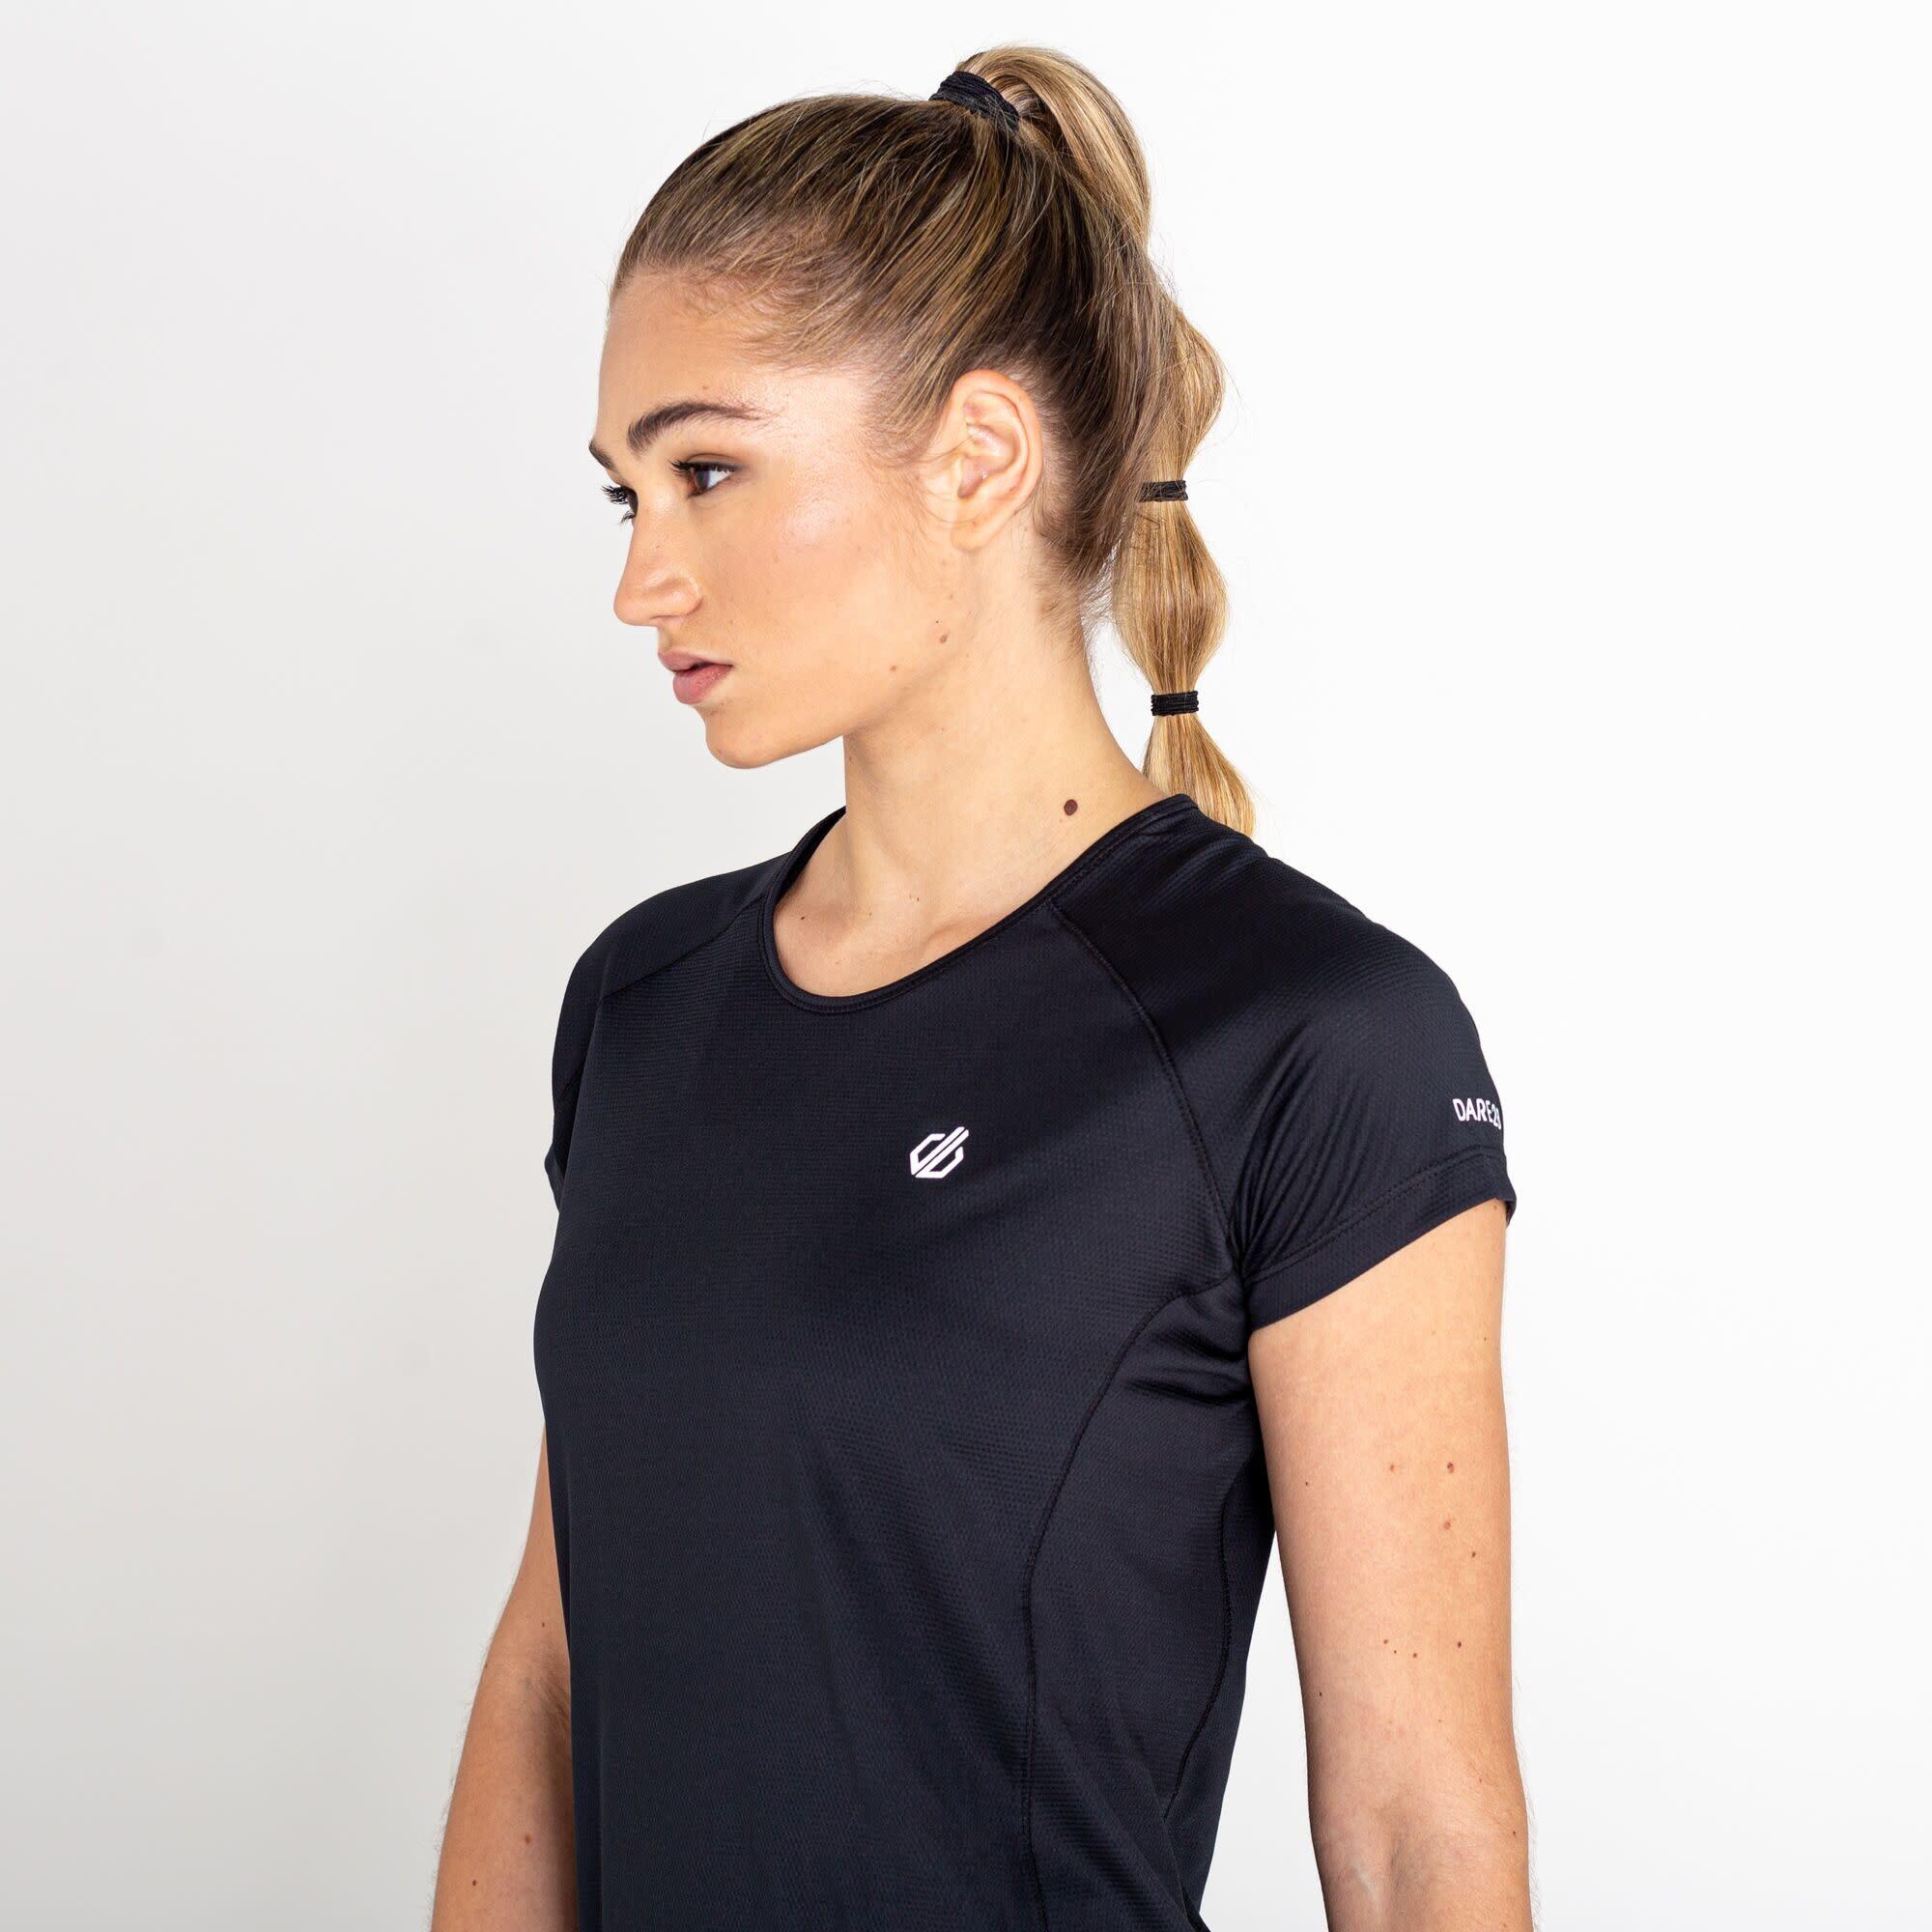 Corral Women's Fitness Short Sleeve T-Shirt - Black 7/7